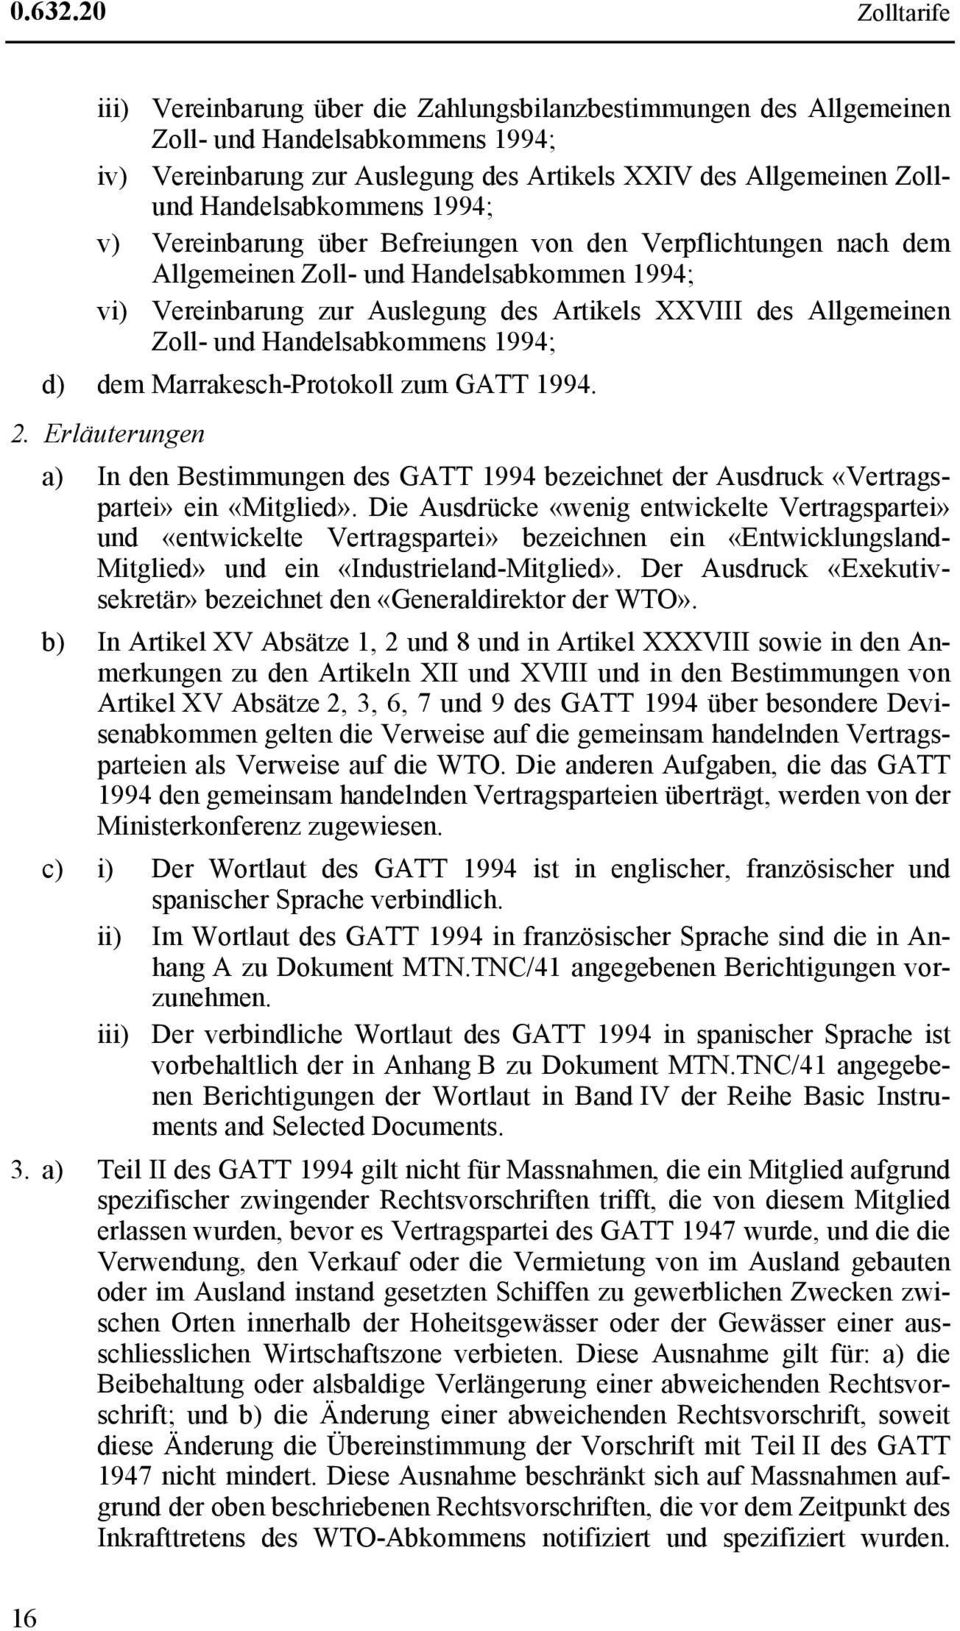 Handelsabkommens 1994; v) Vereinbarung über Befreiungen von den Verpflichtungen nach dem Allgemeinen Zoll- und Handelsabkommen 1994; vi) Vereinbarung zur Auslegung des Artikels XXVIII des Allgemeinen